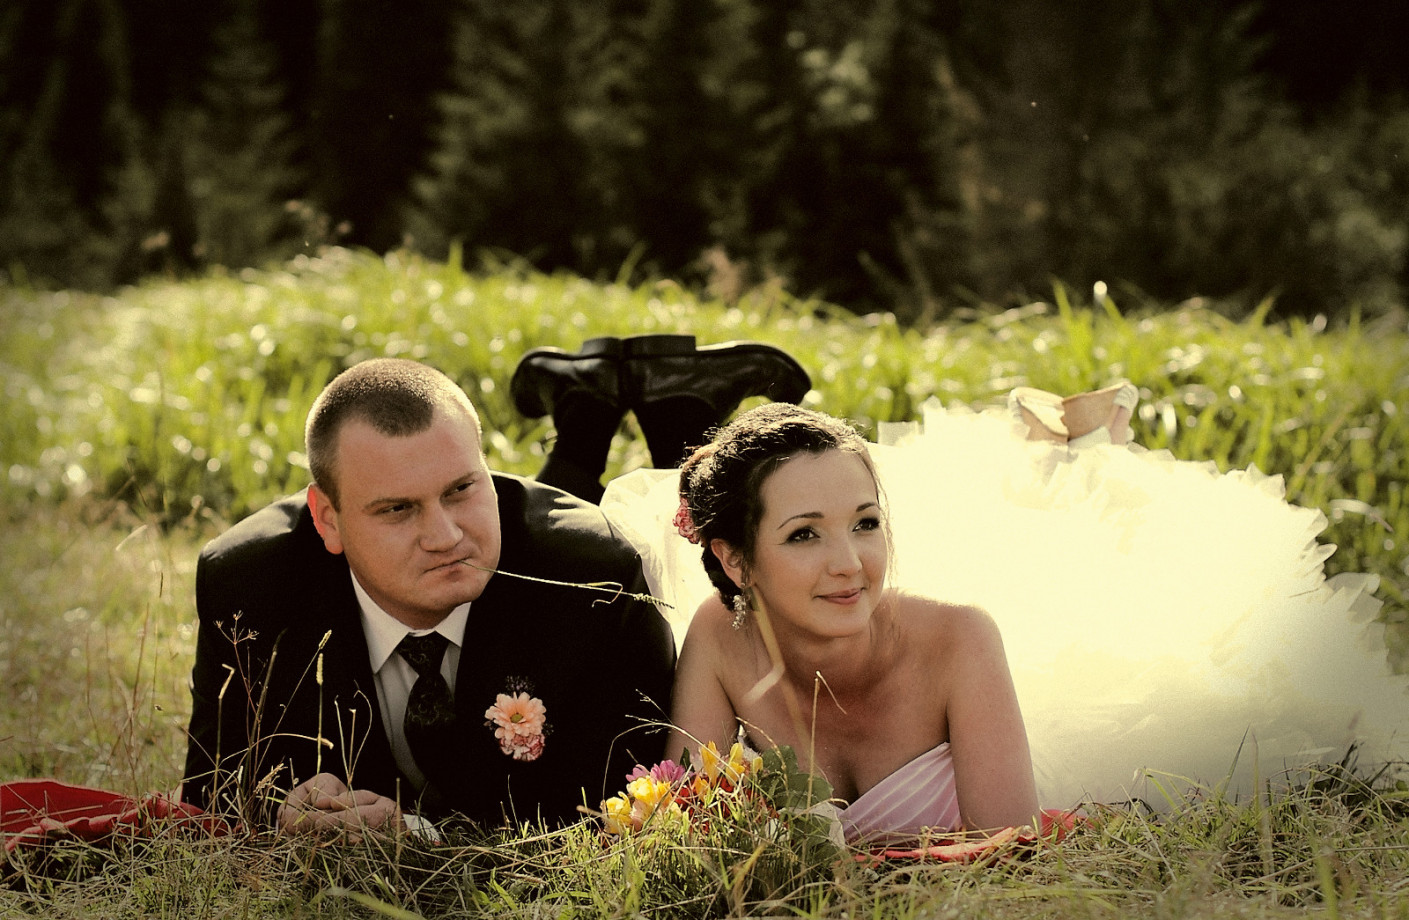 fotograf krakow krzysztof-adamik portfolio zdjecia slubne inspiracje wesele plener slubny sesja slubna